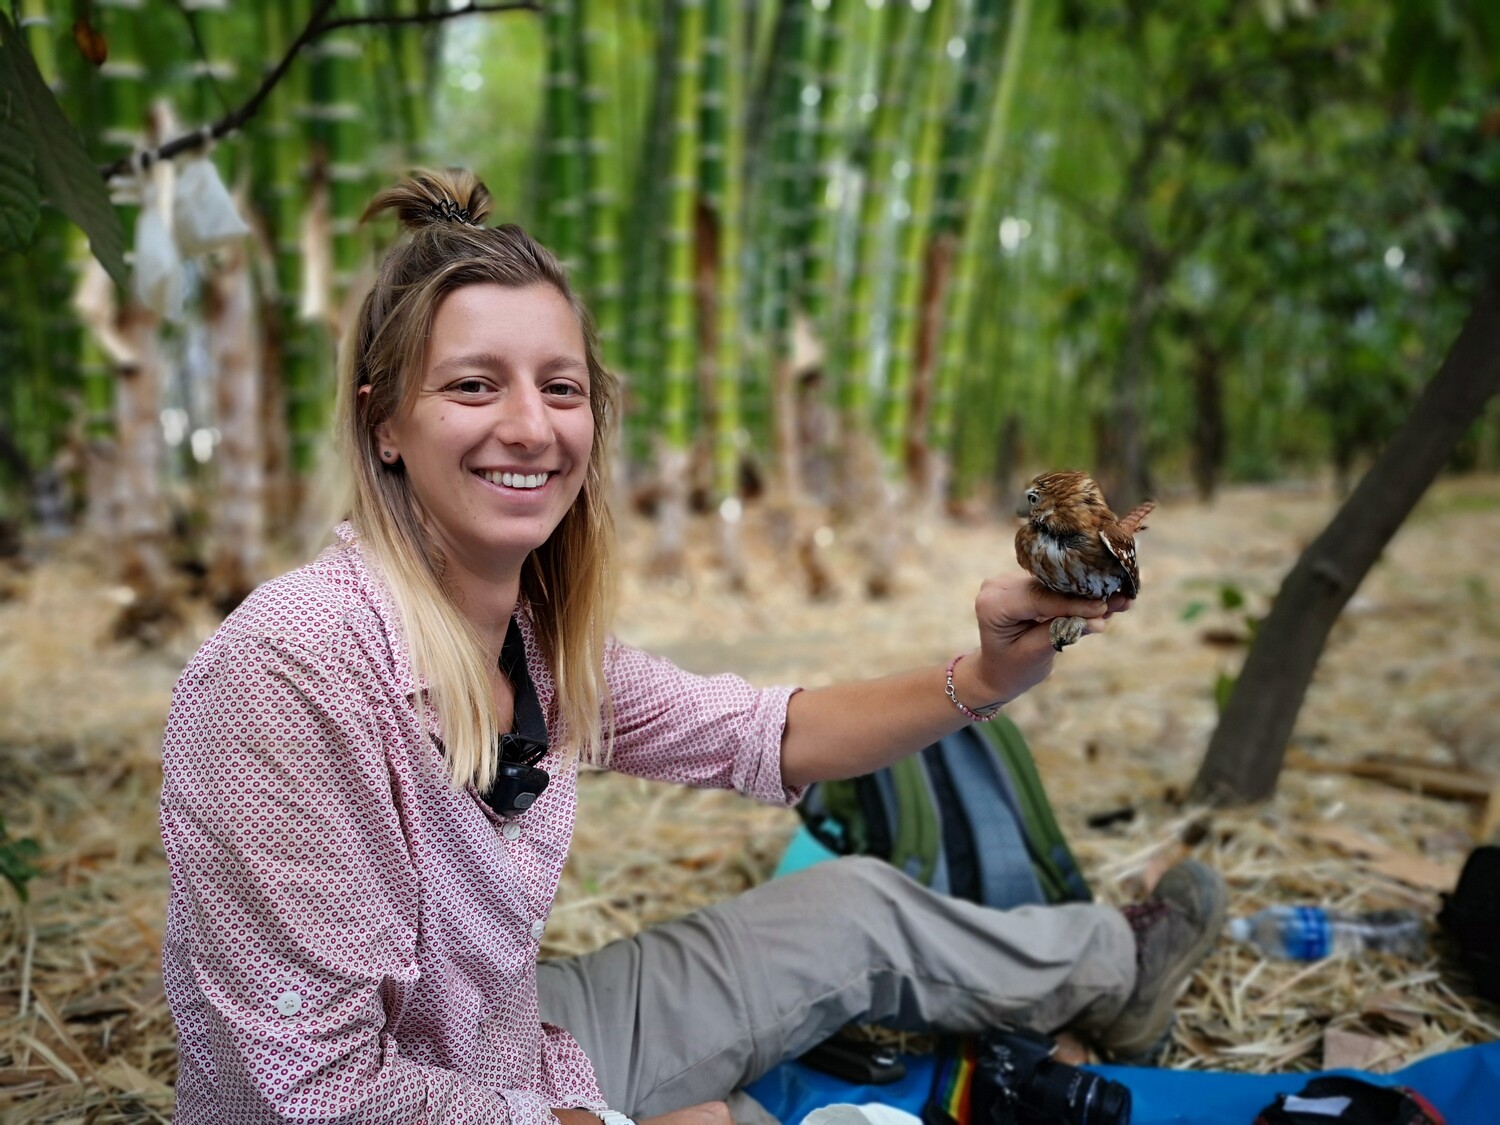 Mitautorin Justine Vansynghel bei der Beobachtung von Vögeln in einer Kakaofarm in Peru und mit einem peruanischen Sperlingskauz (Glaucidium peruanum).